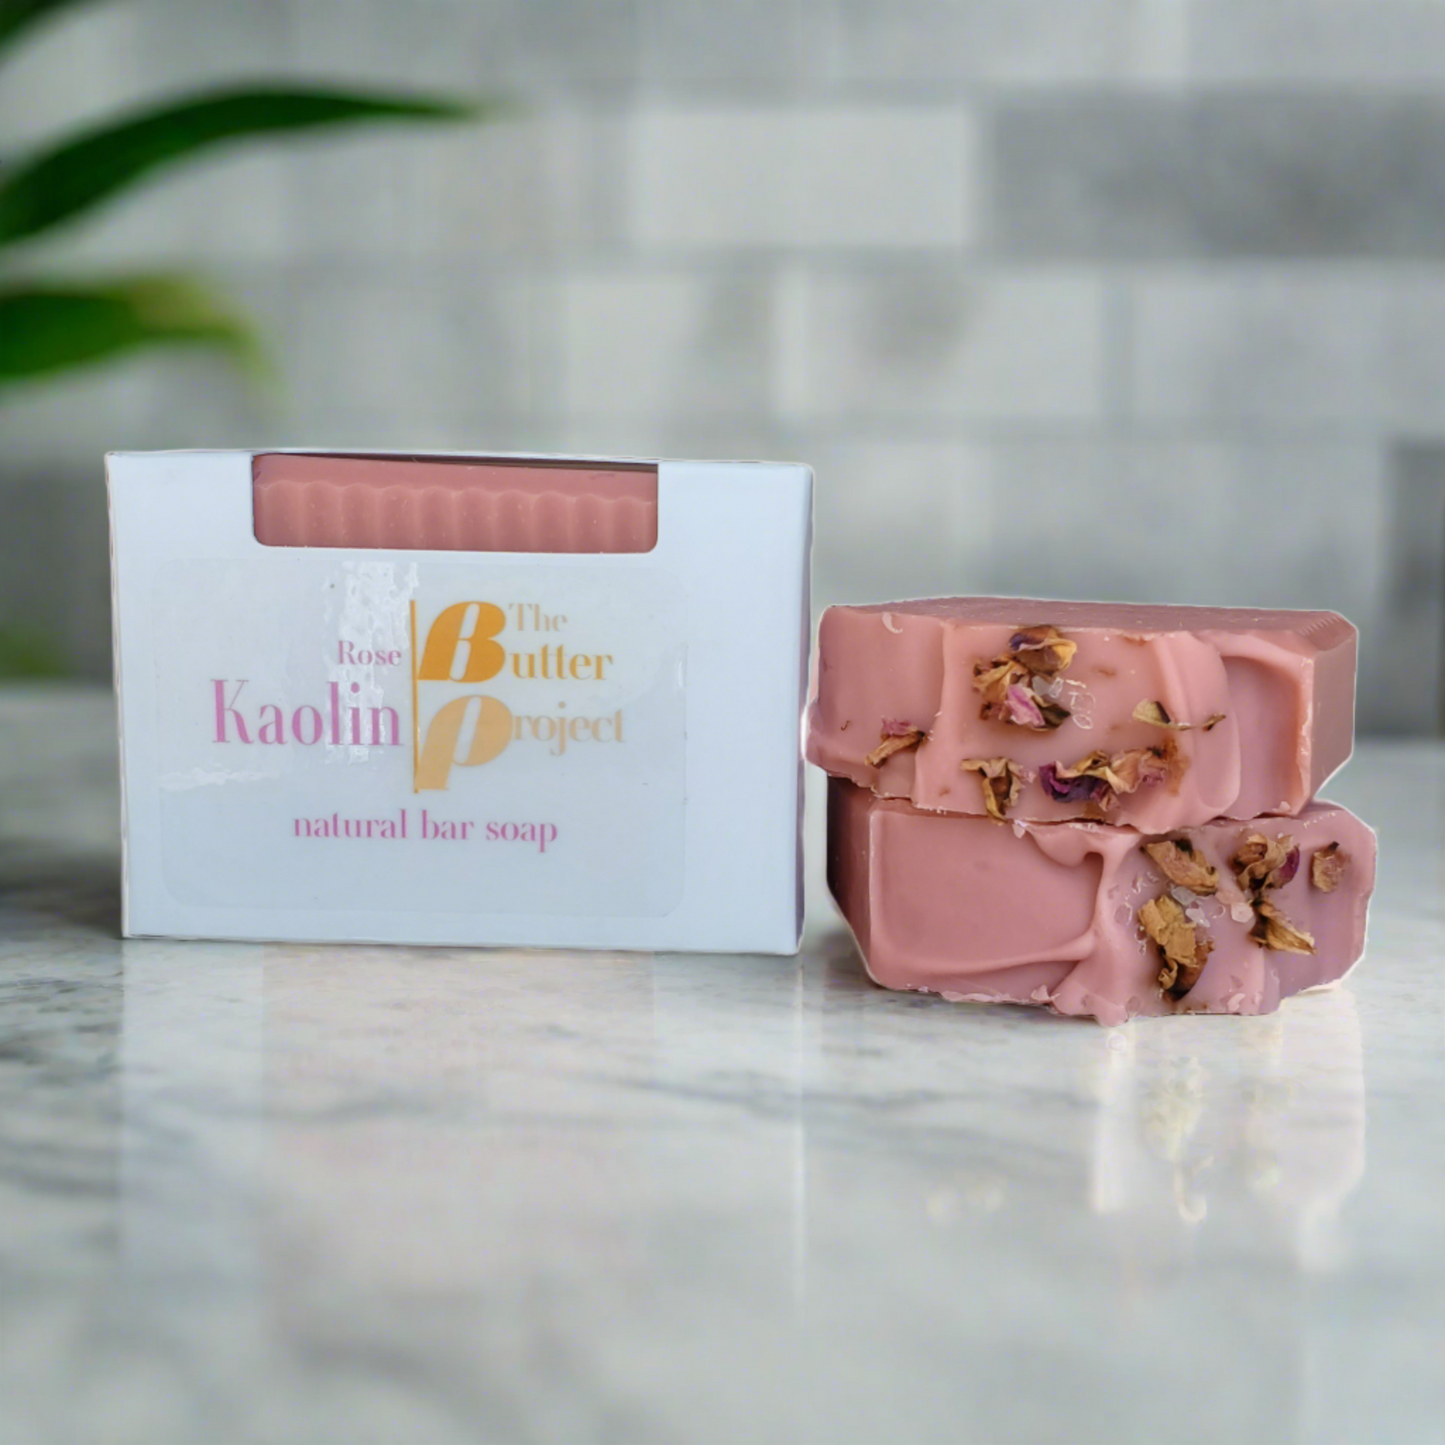 Image of Rose Kaolin Natural Bar Soap box and two Rose Kaolin Natural Bar Soap from The Butter Project.